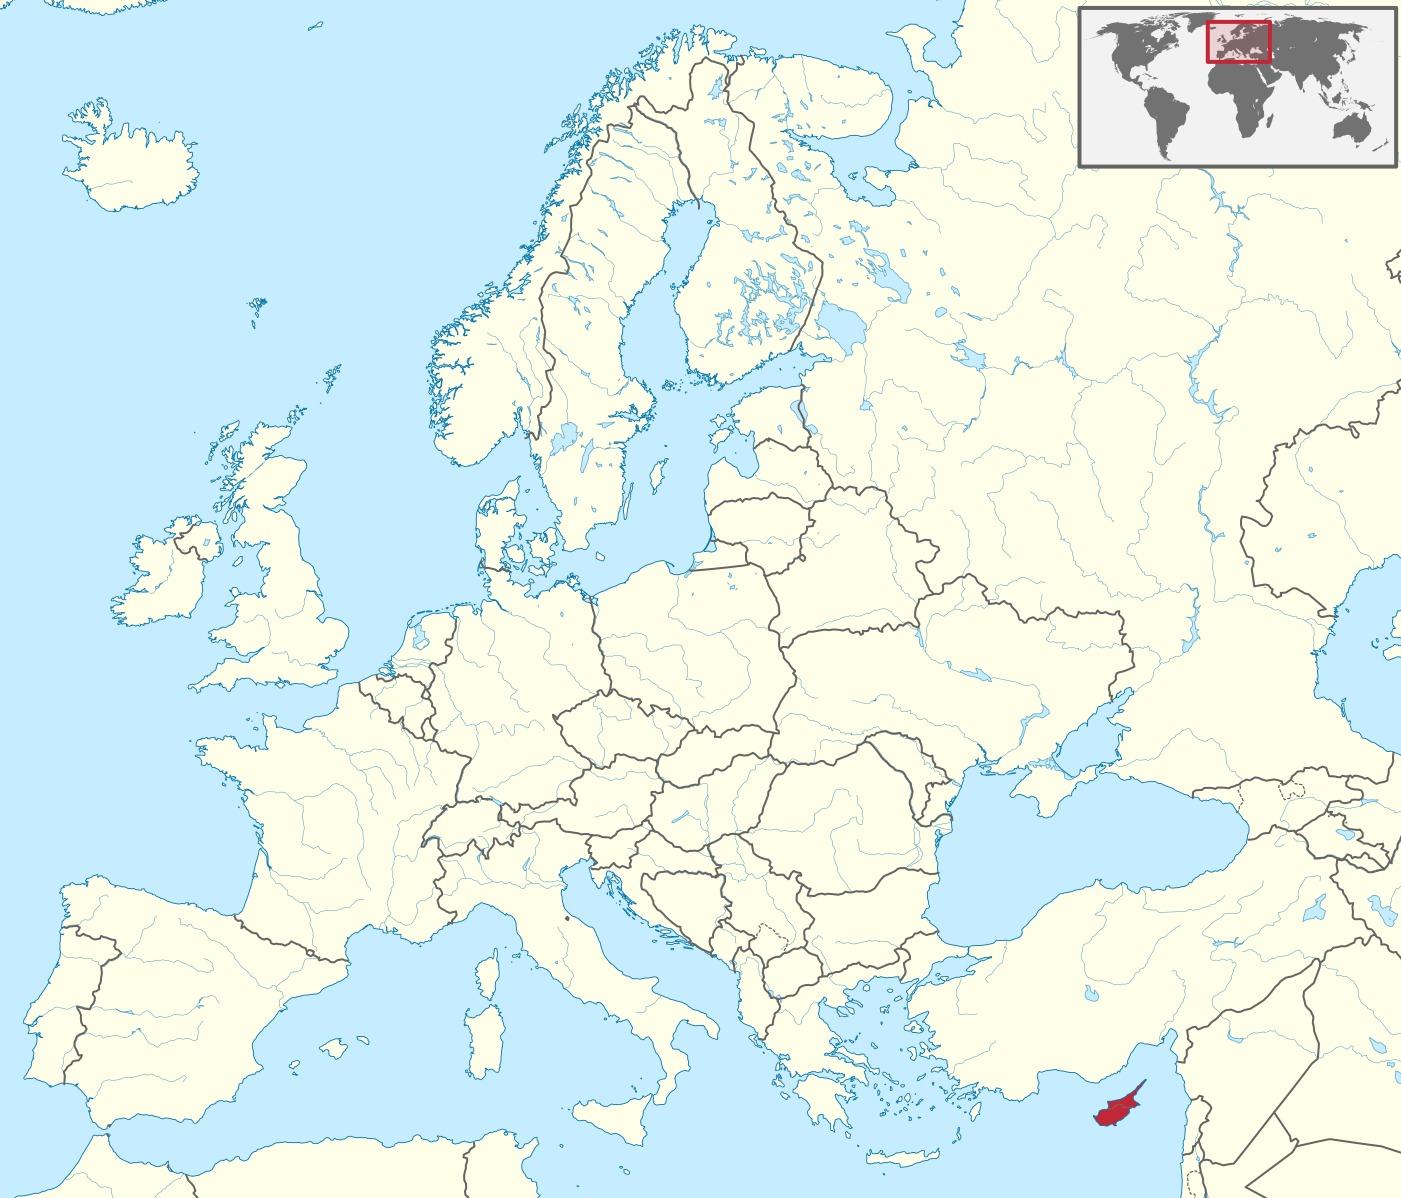 Расположение Кипра на карте мира - карта мира, показывающая Кипр (ЮжнаяЕвропа - Европа)